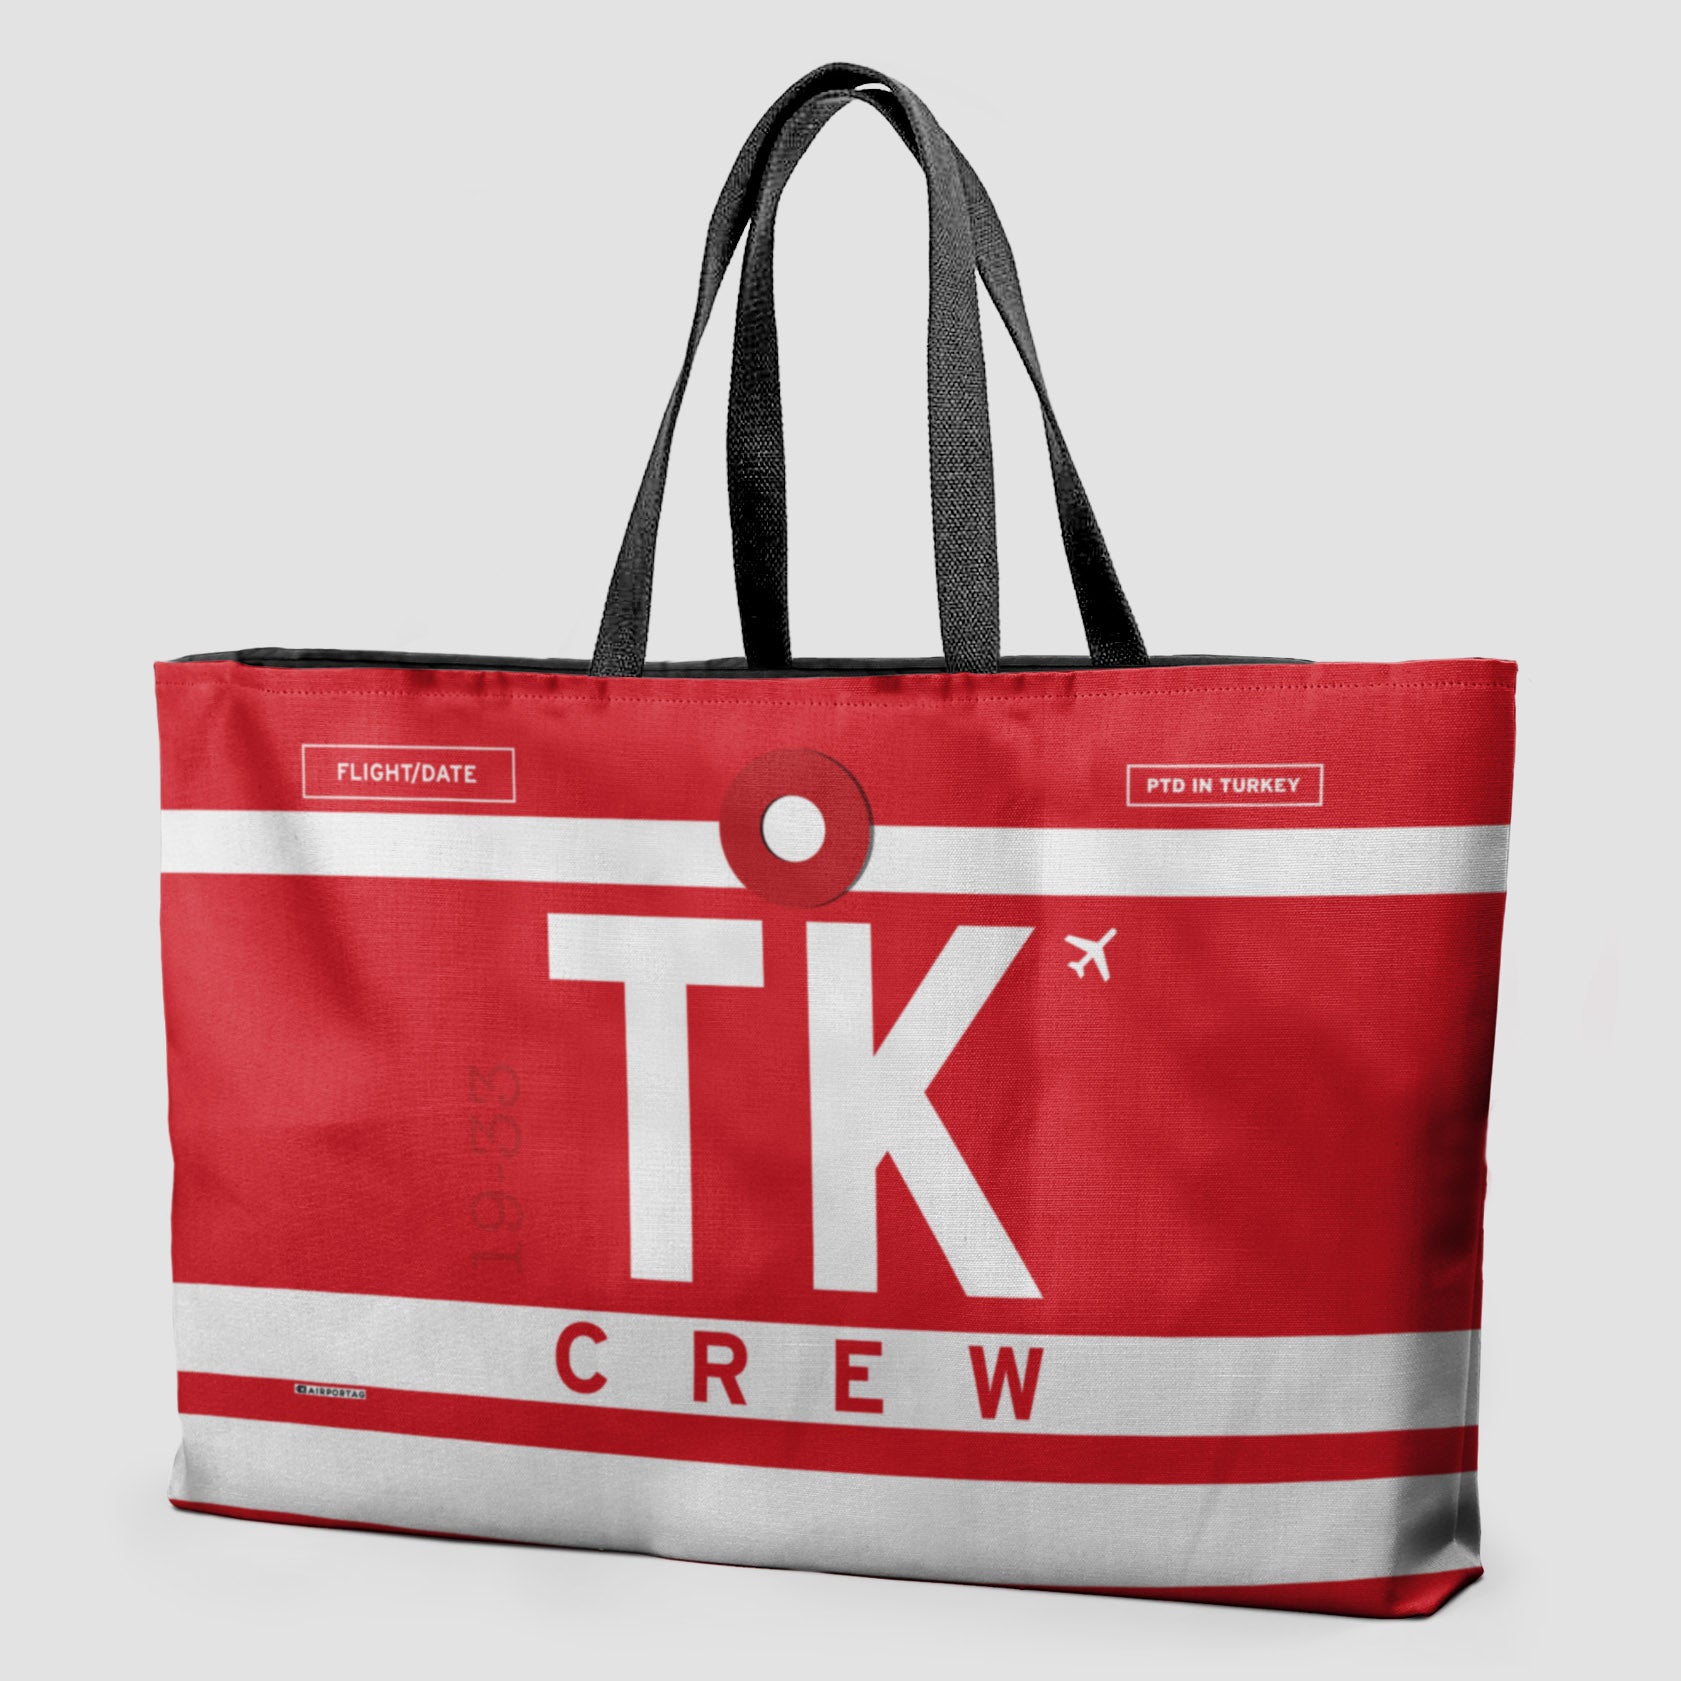 TK - Weekender Bag - Airportag